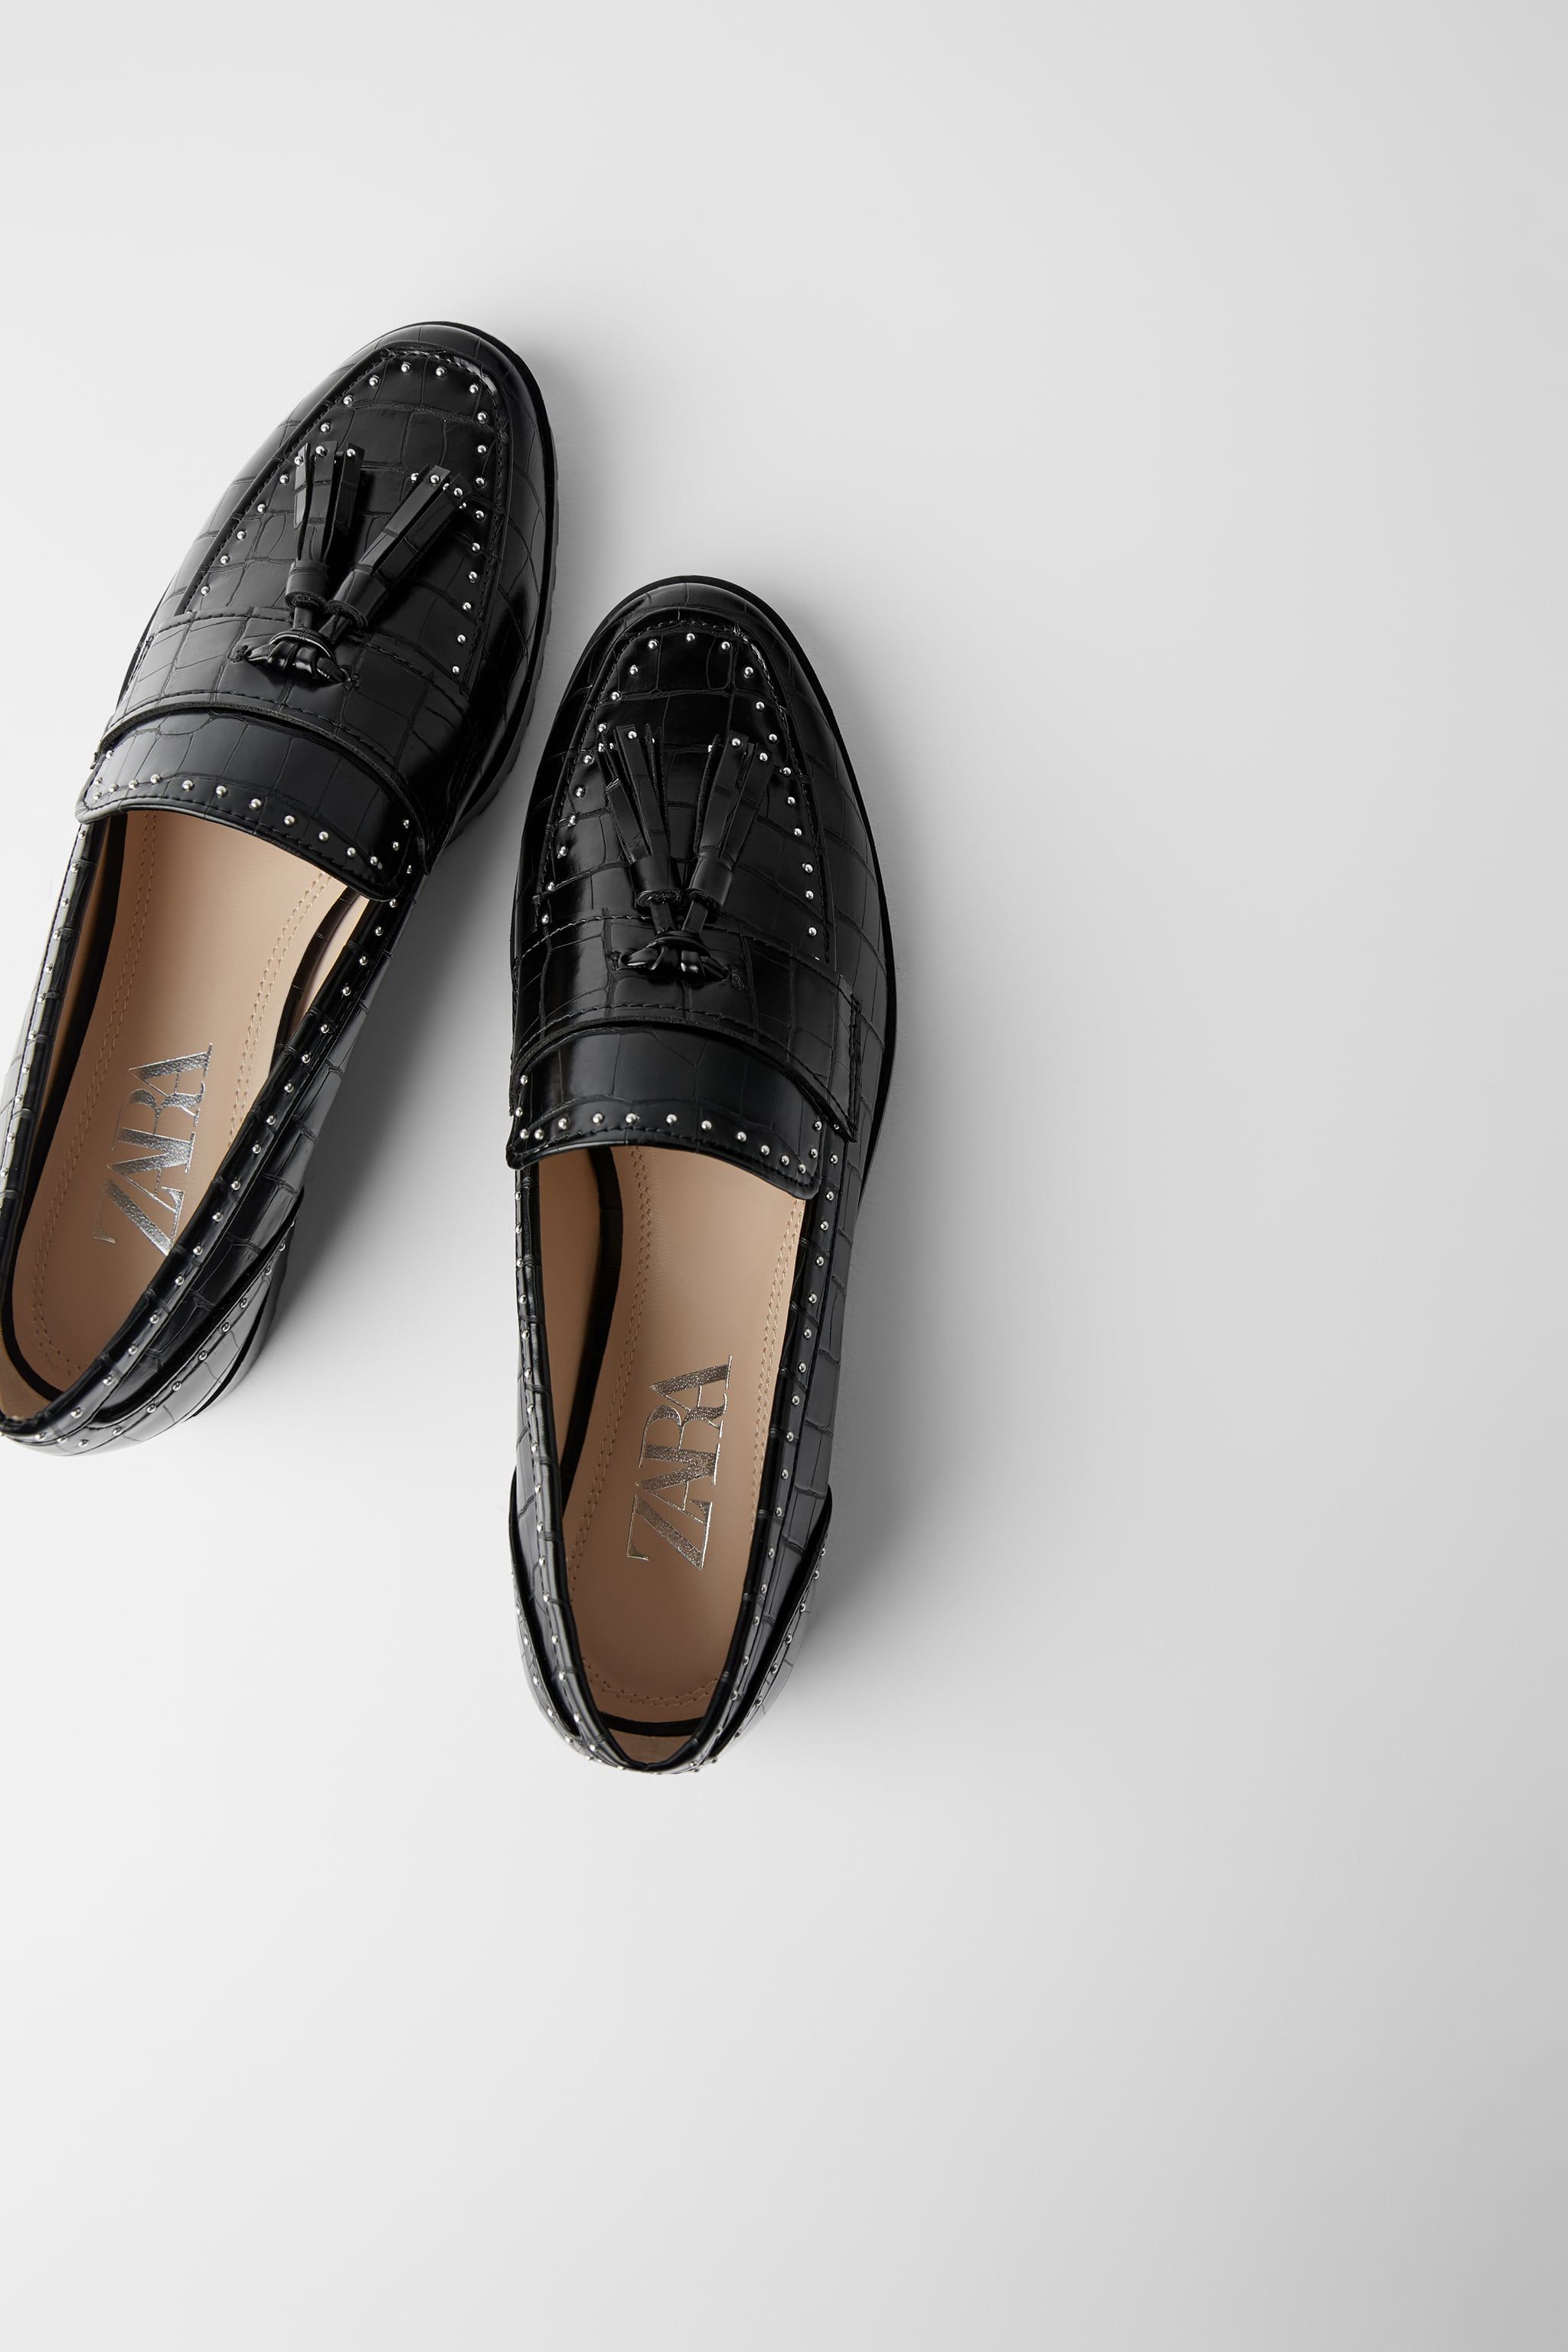 Zara zapatos planos negros más elegantes y 'low cost'